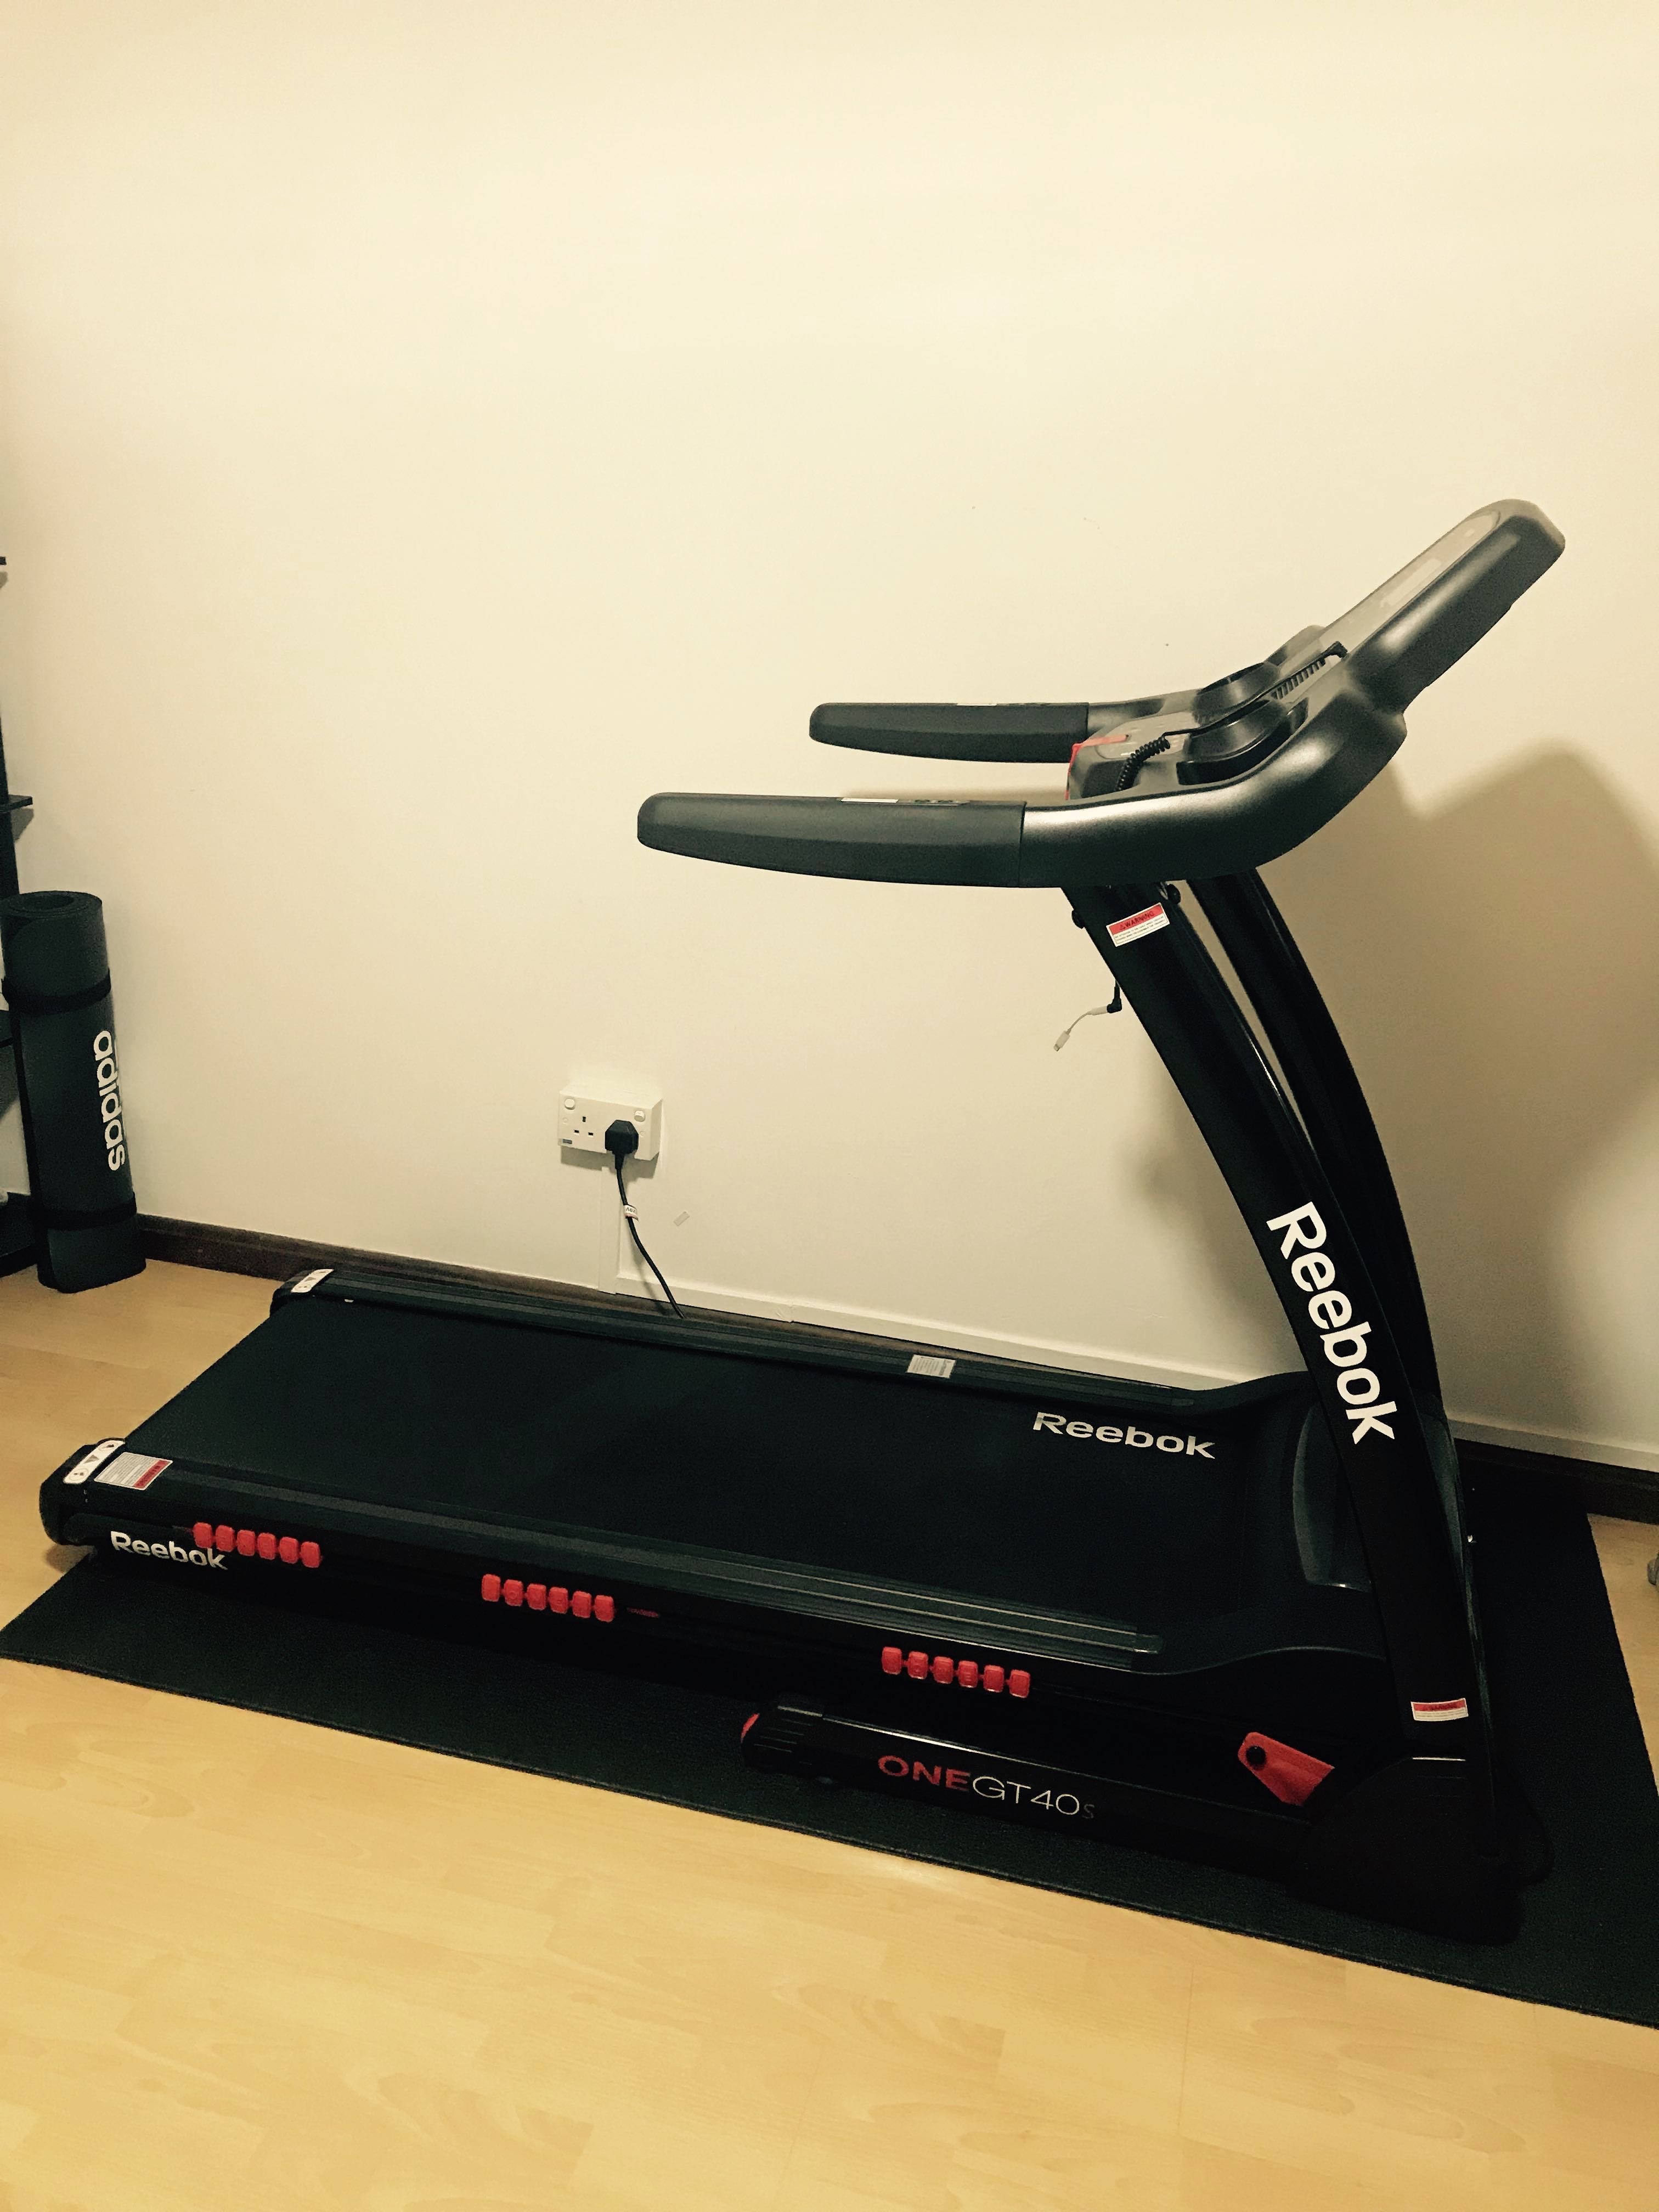 Reebok One GT40 Treadmill (12 months 